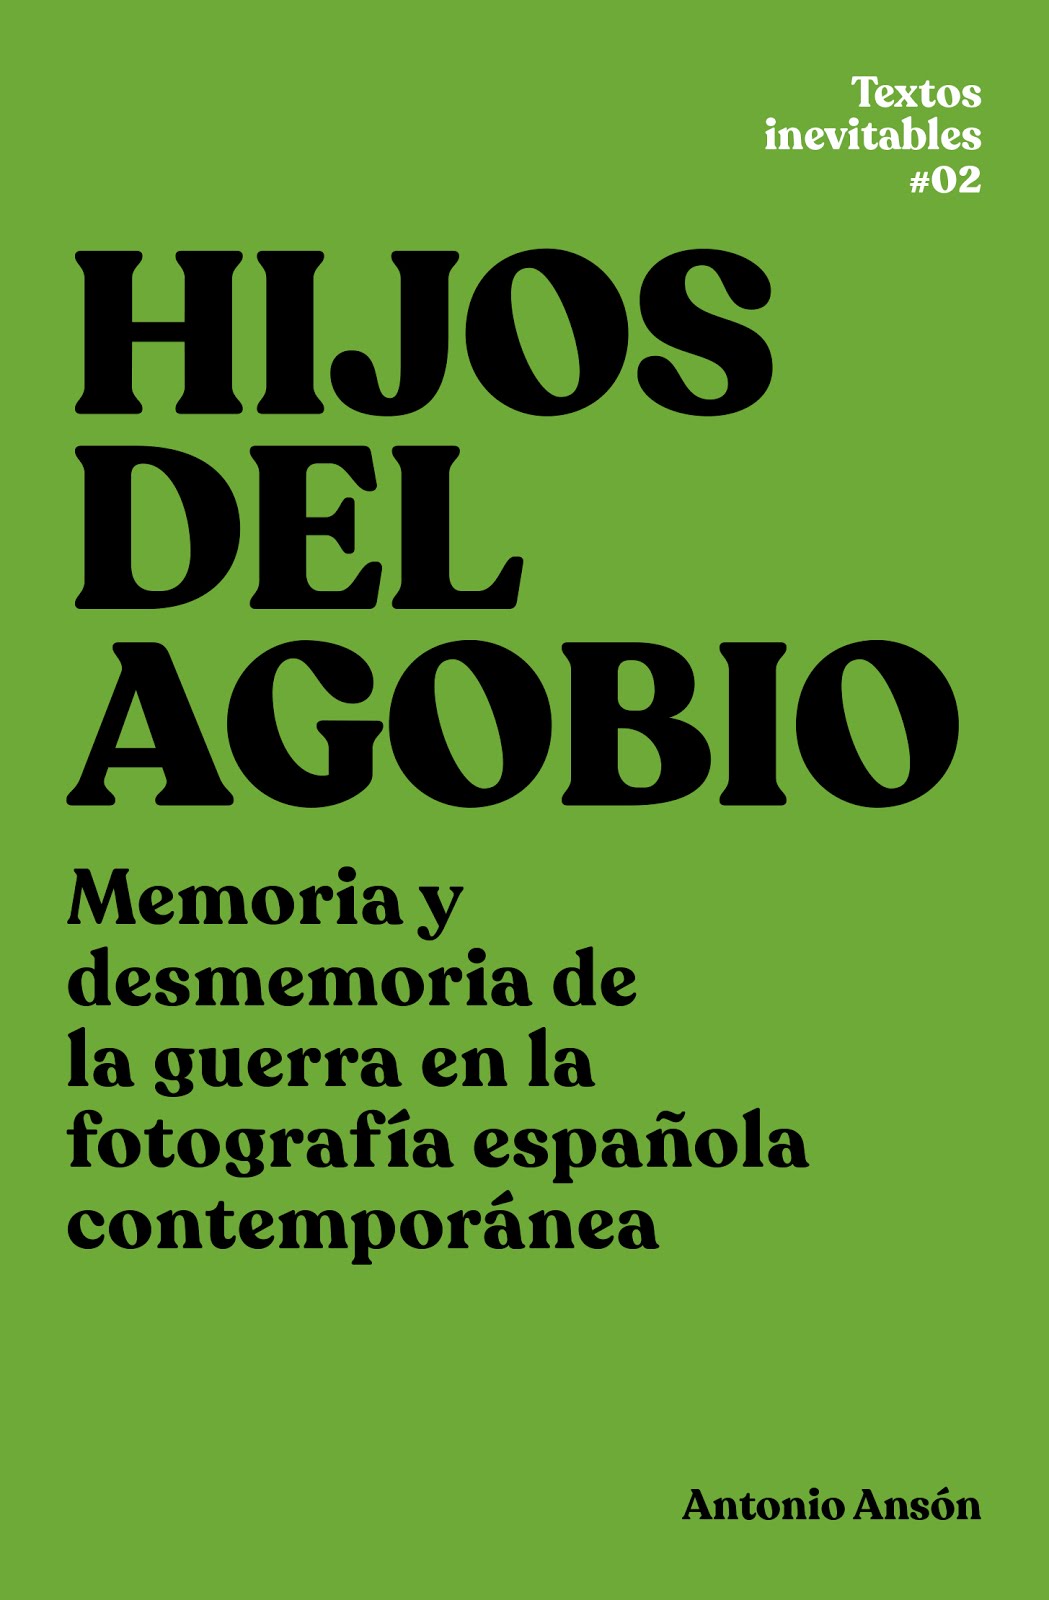 HIJOS DEL AGOBIO. Memoria y desmemoria de la guerra en la fotografía española contemporánea